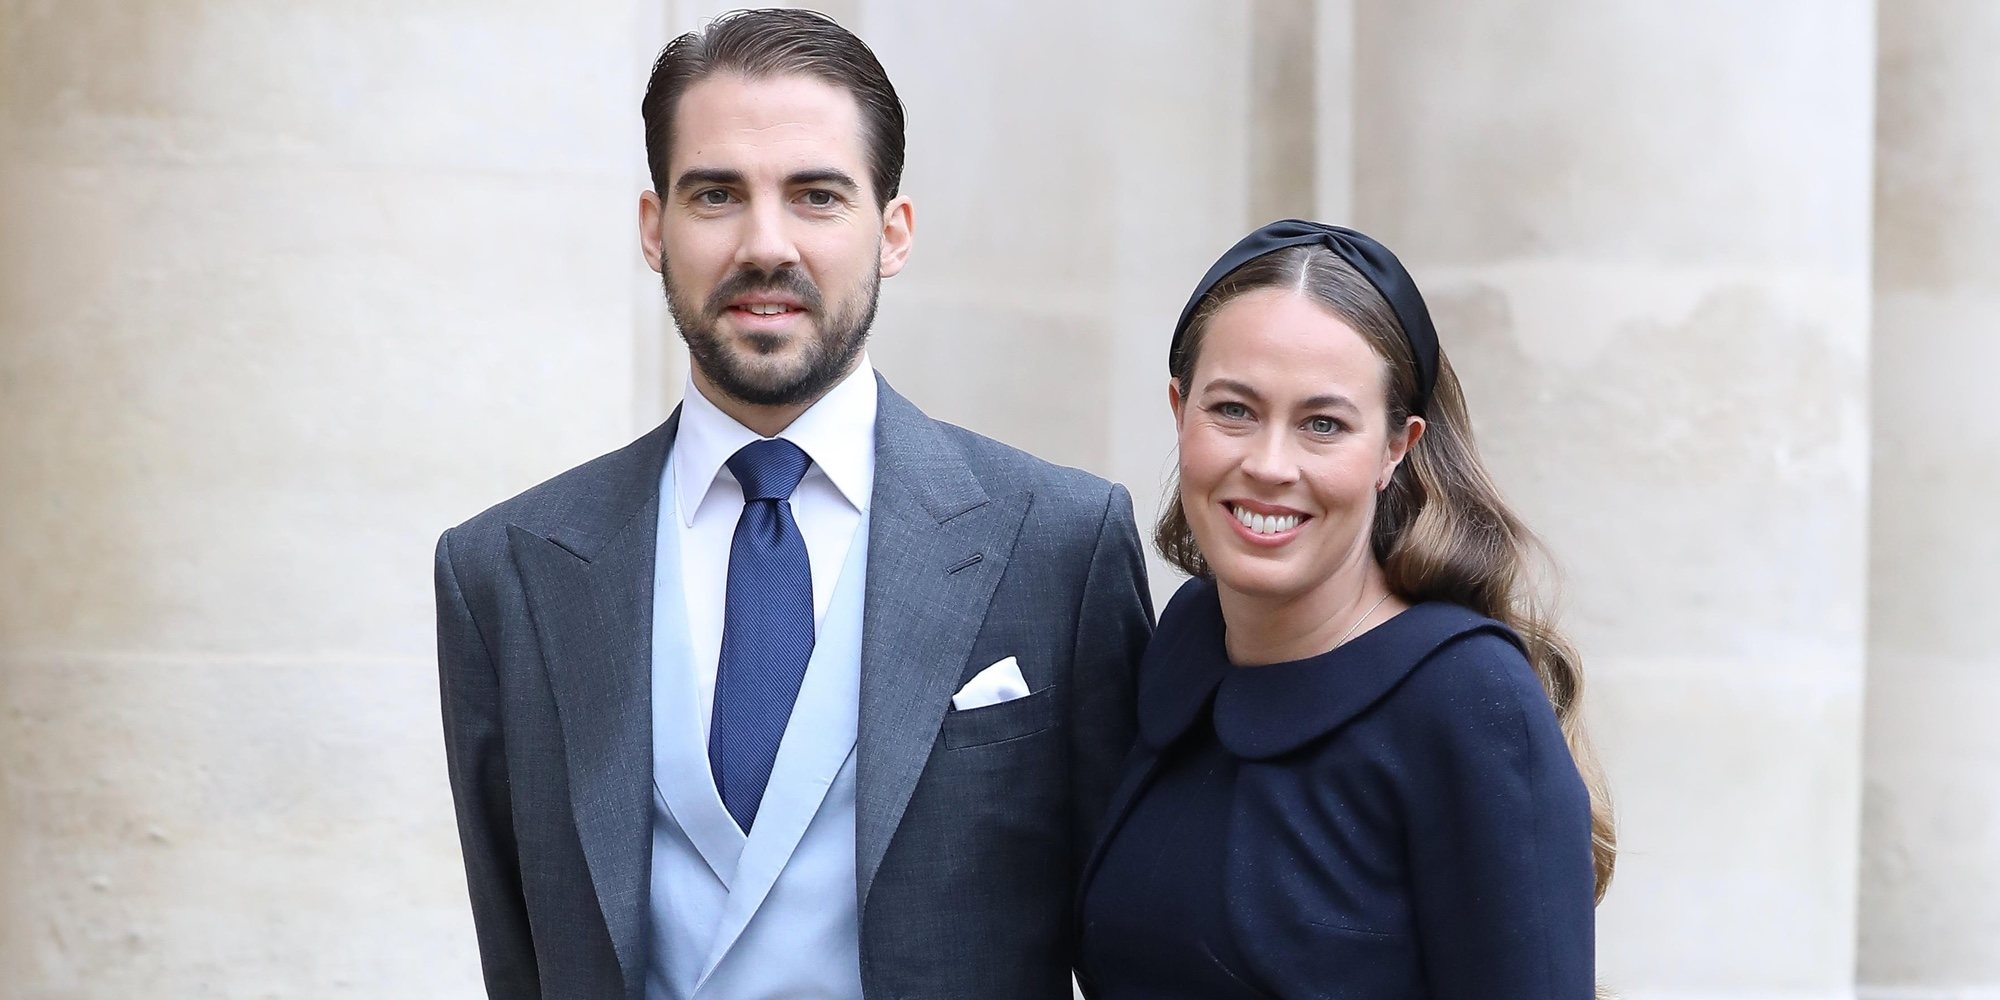 Felipe de Grecia y Nina Flohr se han casado: boda secreta en Suiza con dos invitados